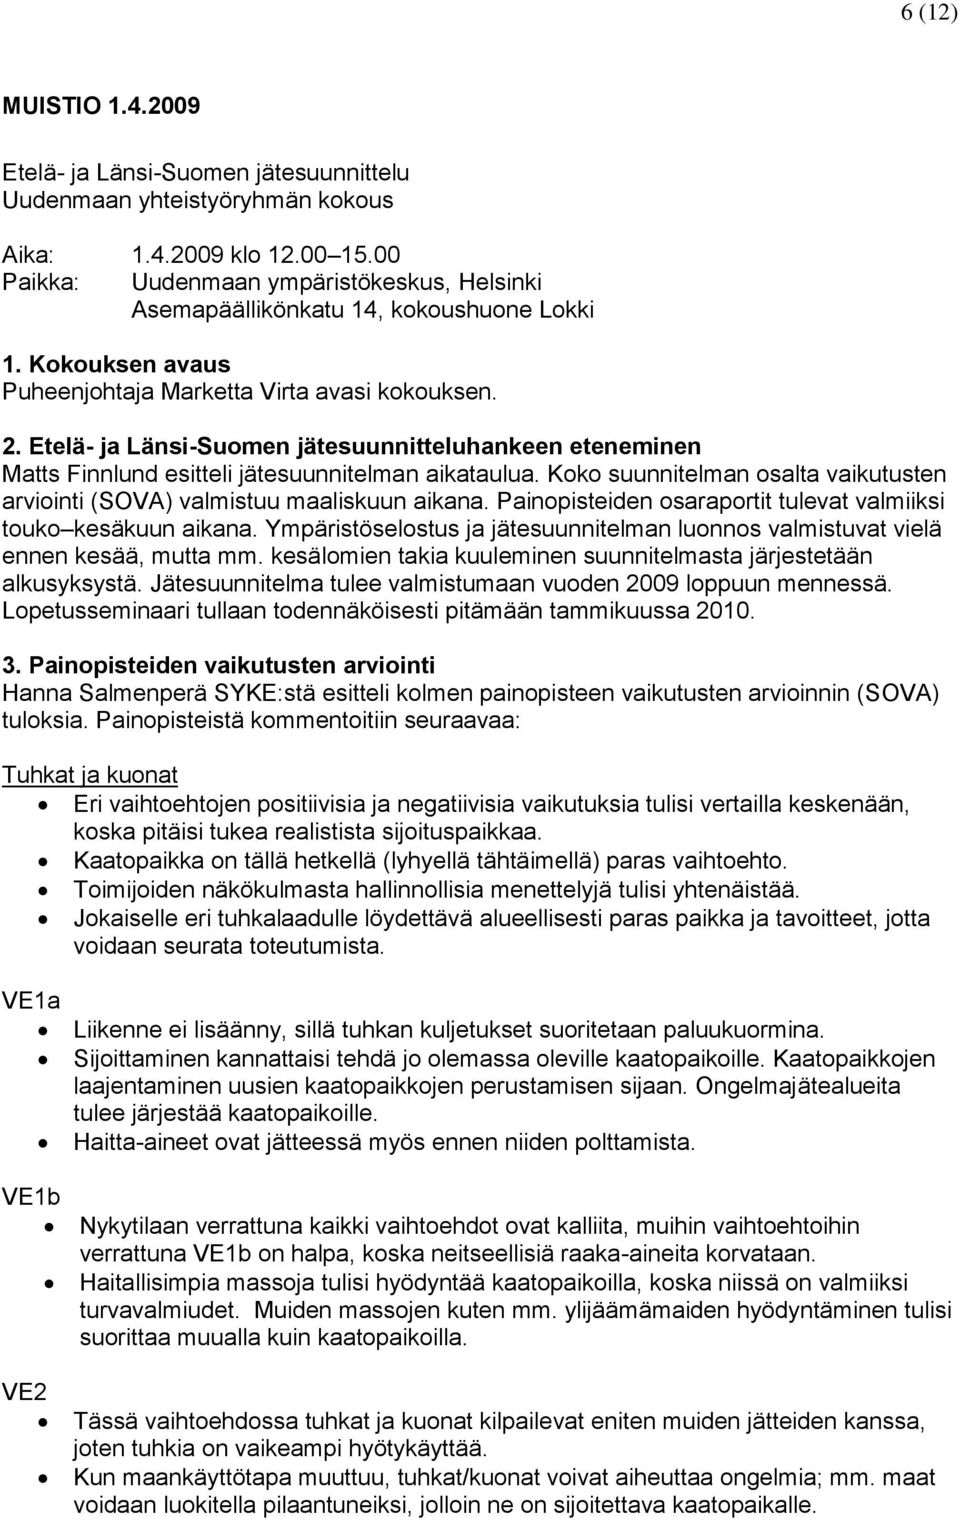 Etelä- ja Länsi-Suomen jätesuunnitteluhankeen eteneminen Matts Finnlund esitteli jätesuunnitelman aikataulua. Koko suunnitelman osalta vaikutusten arviointi (SOVA) valmistuu maaliskuun aikana.